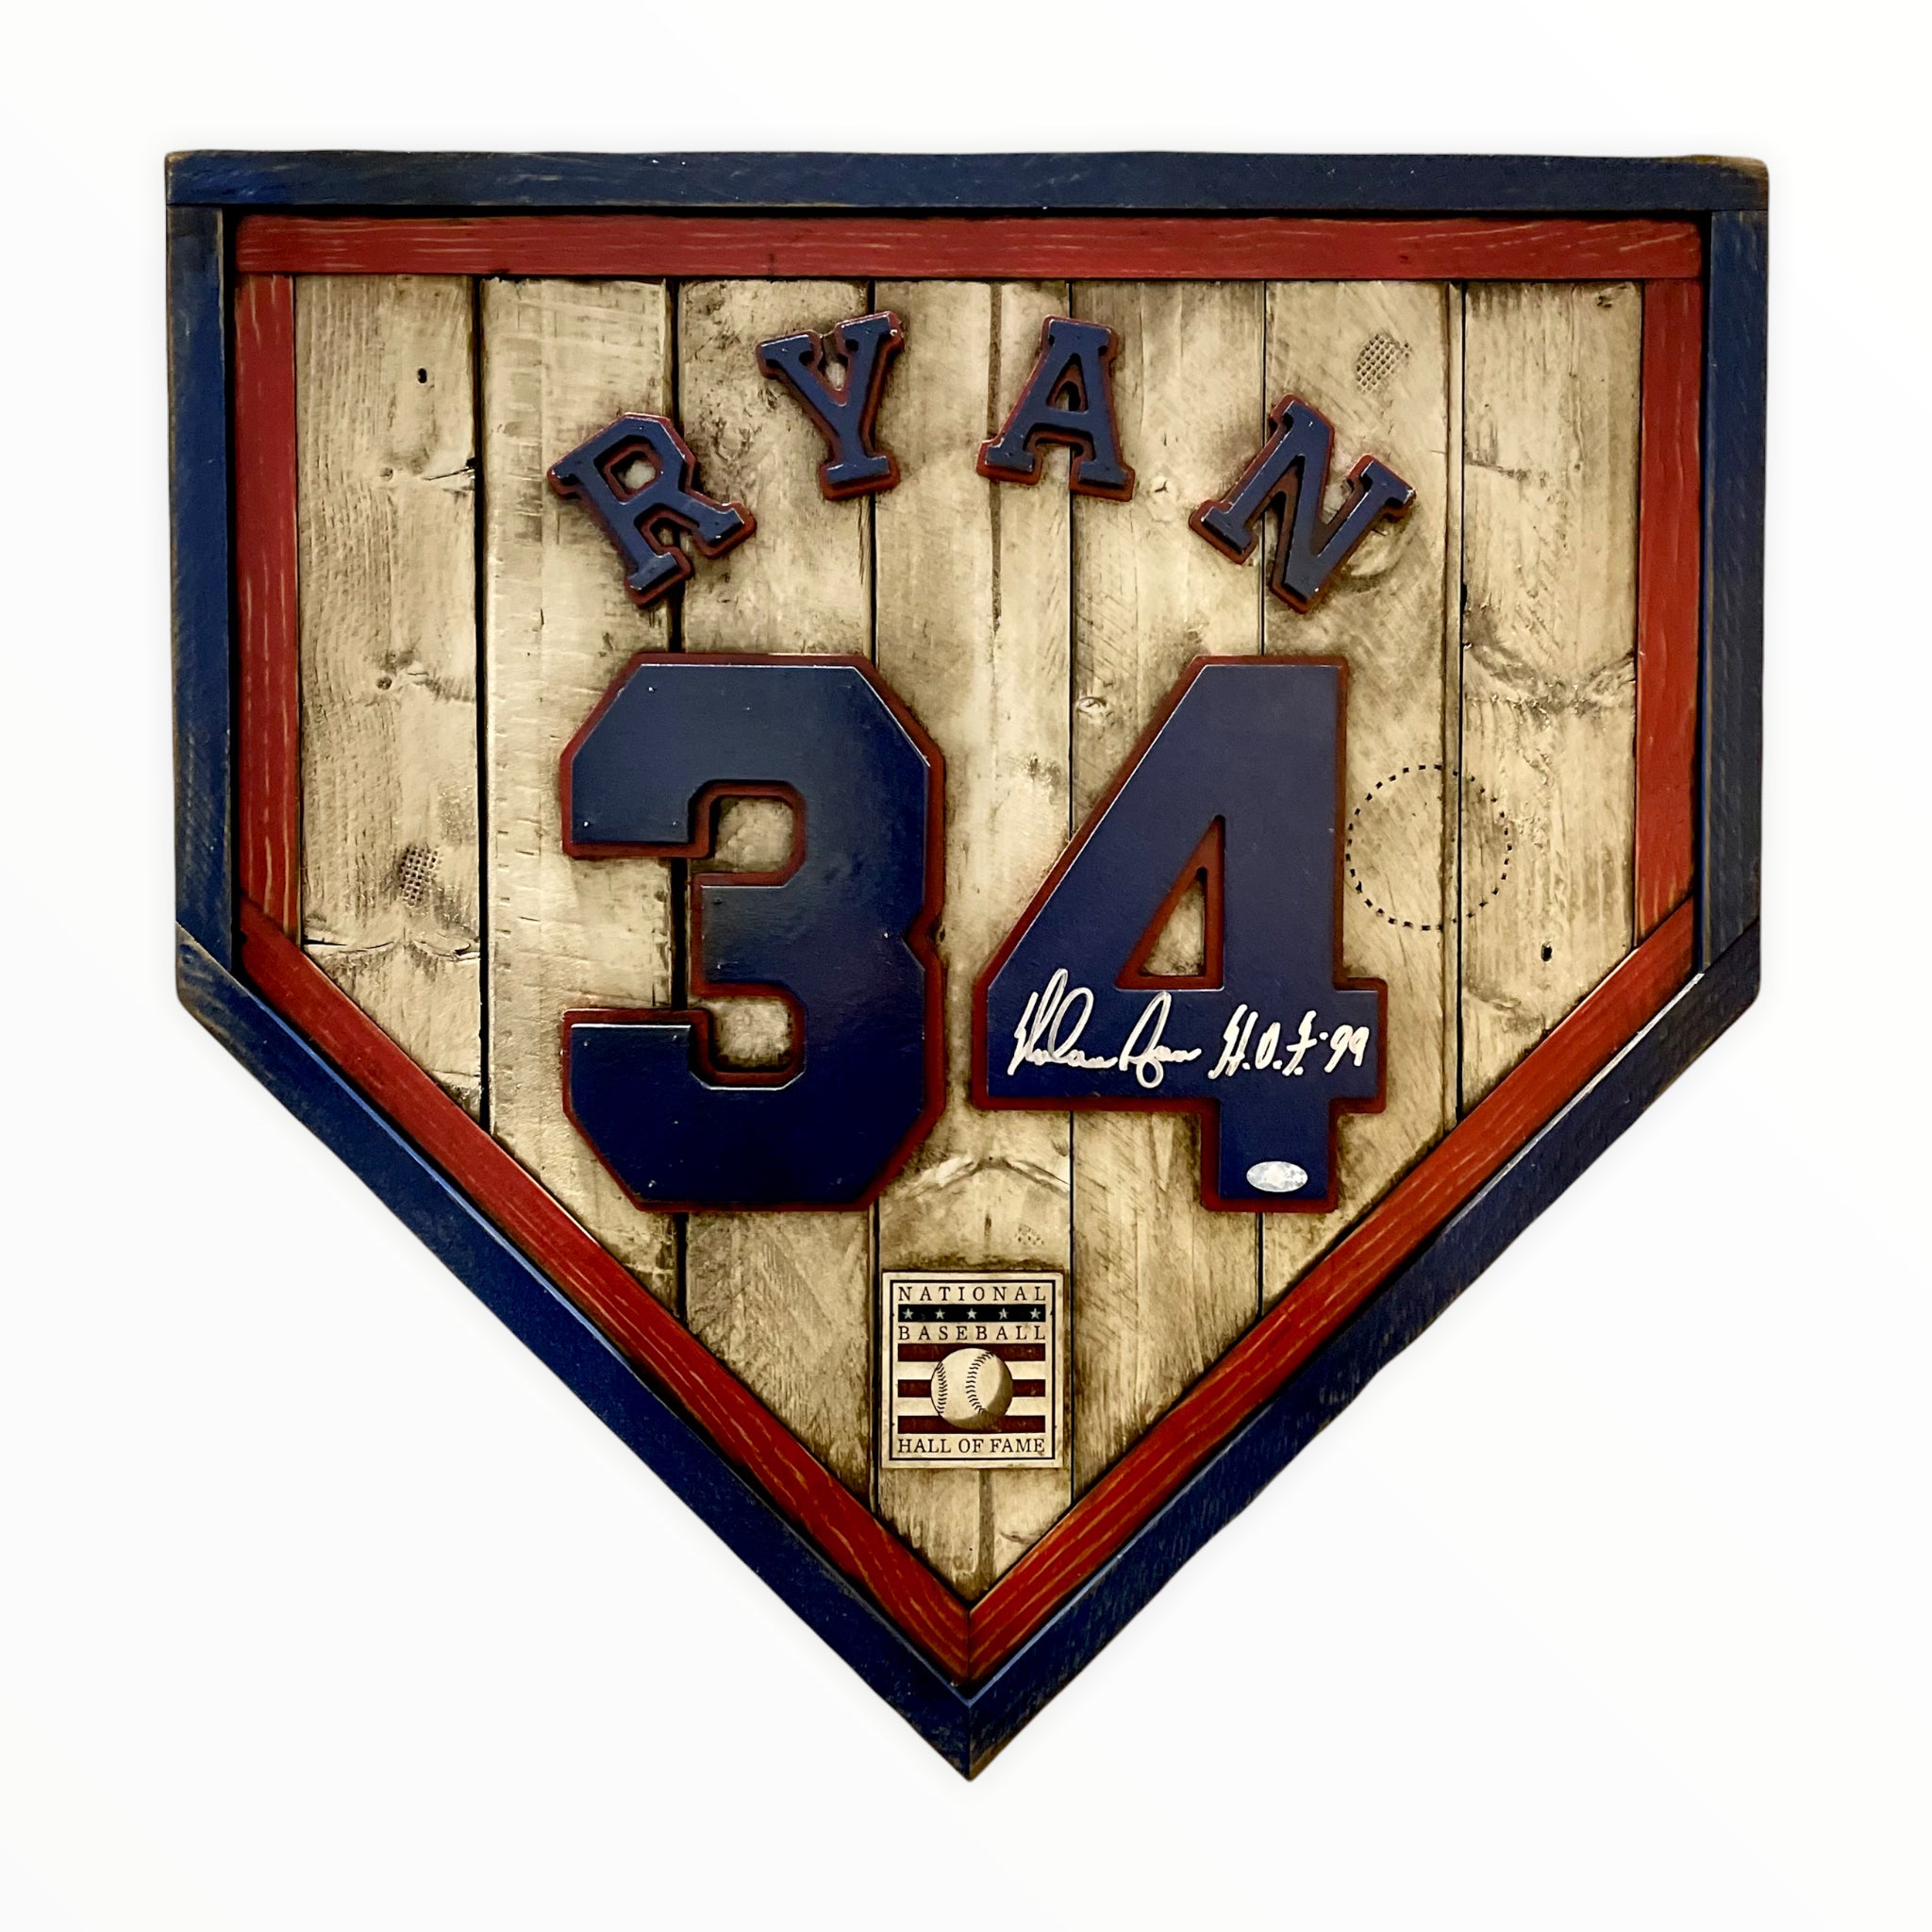 Autographed Heritage Handmade Collection-National Baseball Hall of Fame